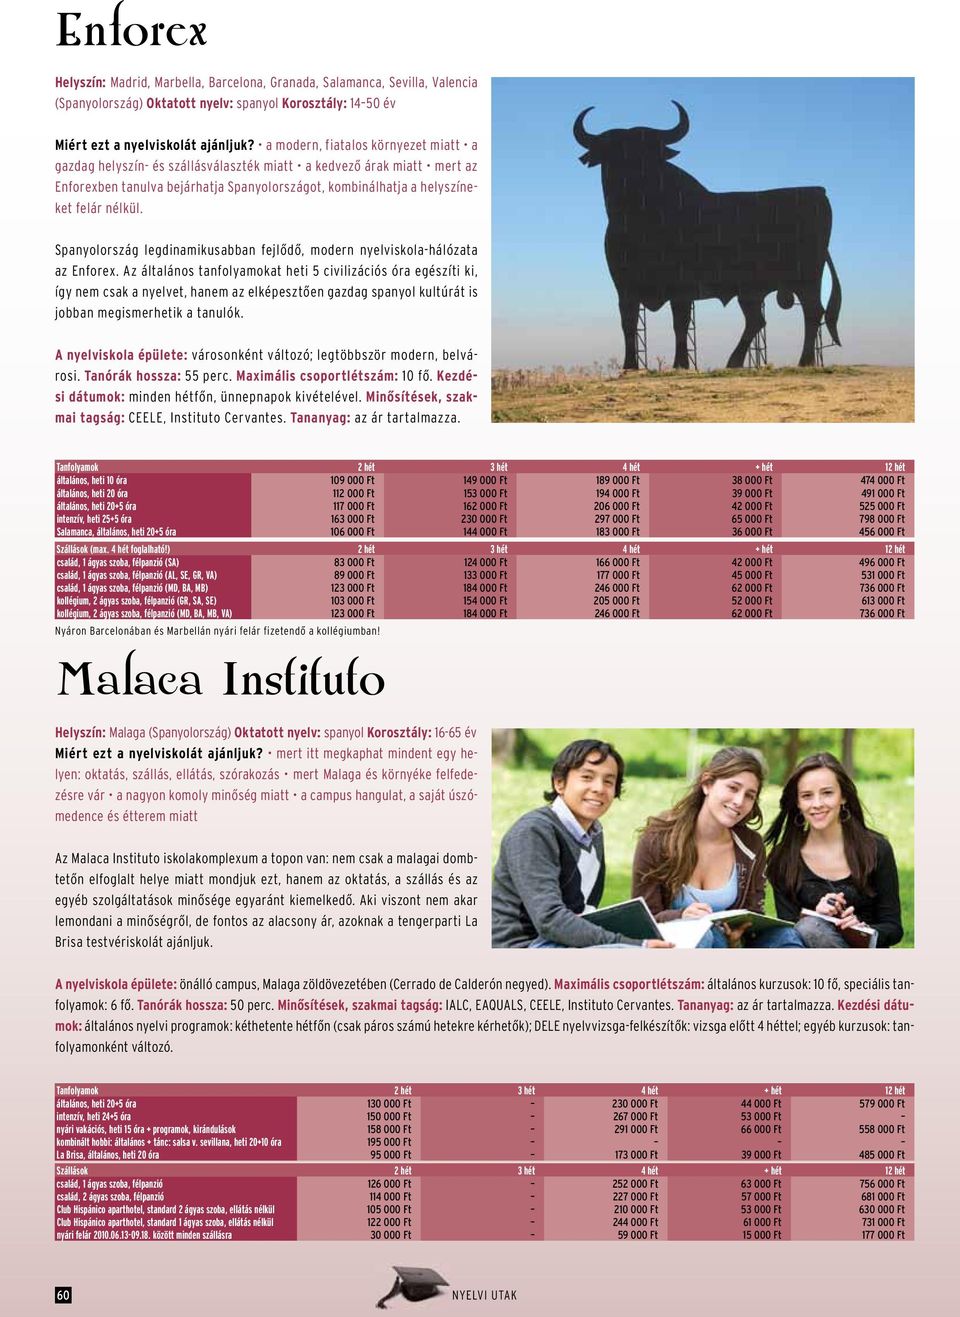 Spanyolország legdinamikusabban fejlődő, modern nyelviskola-hálózata az Enforex.